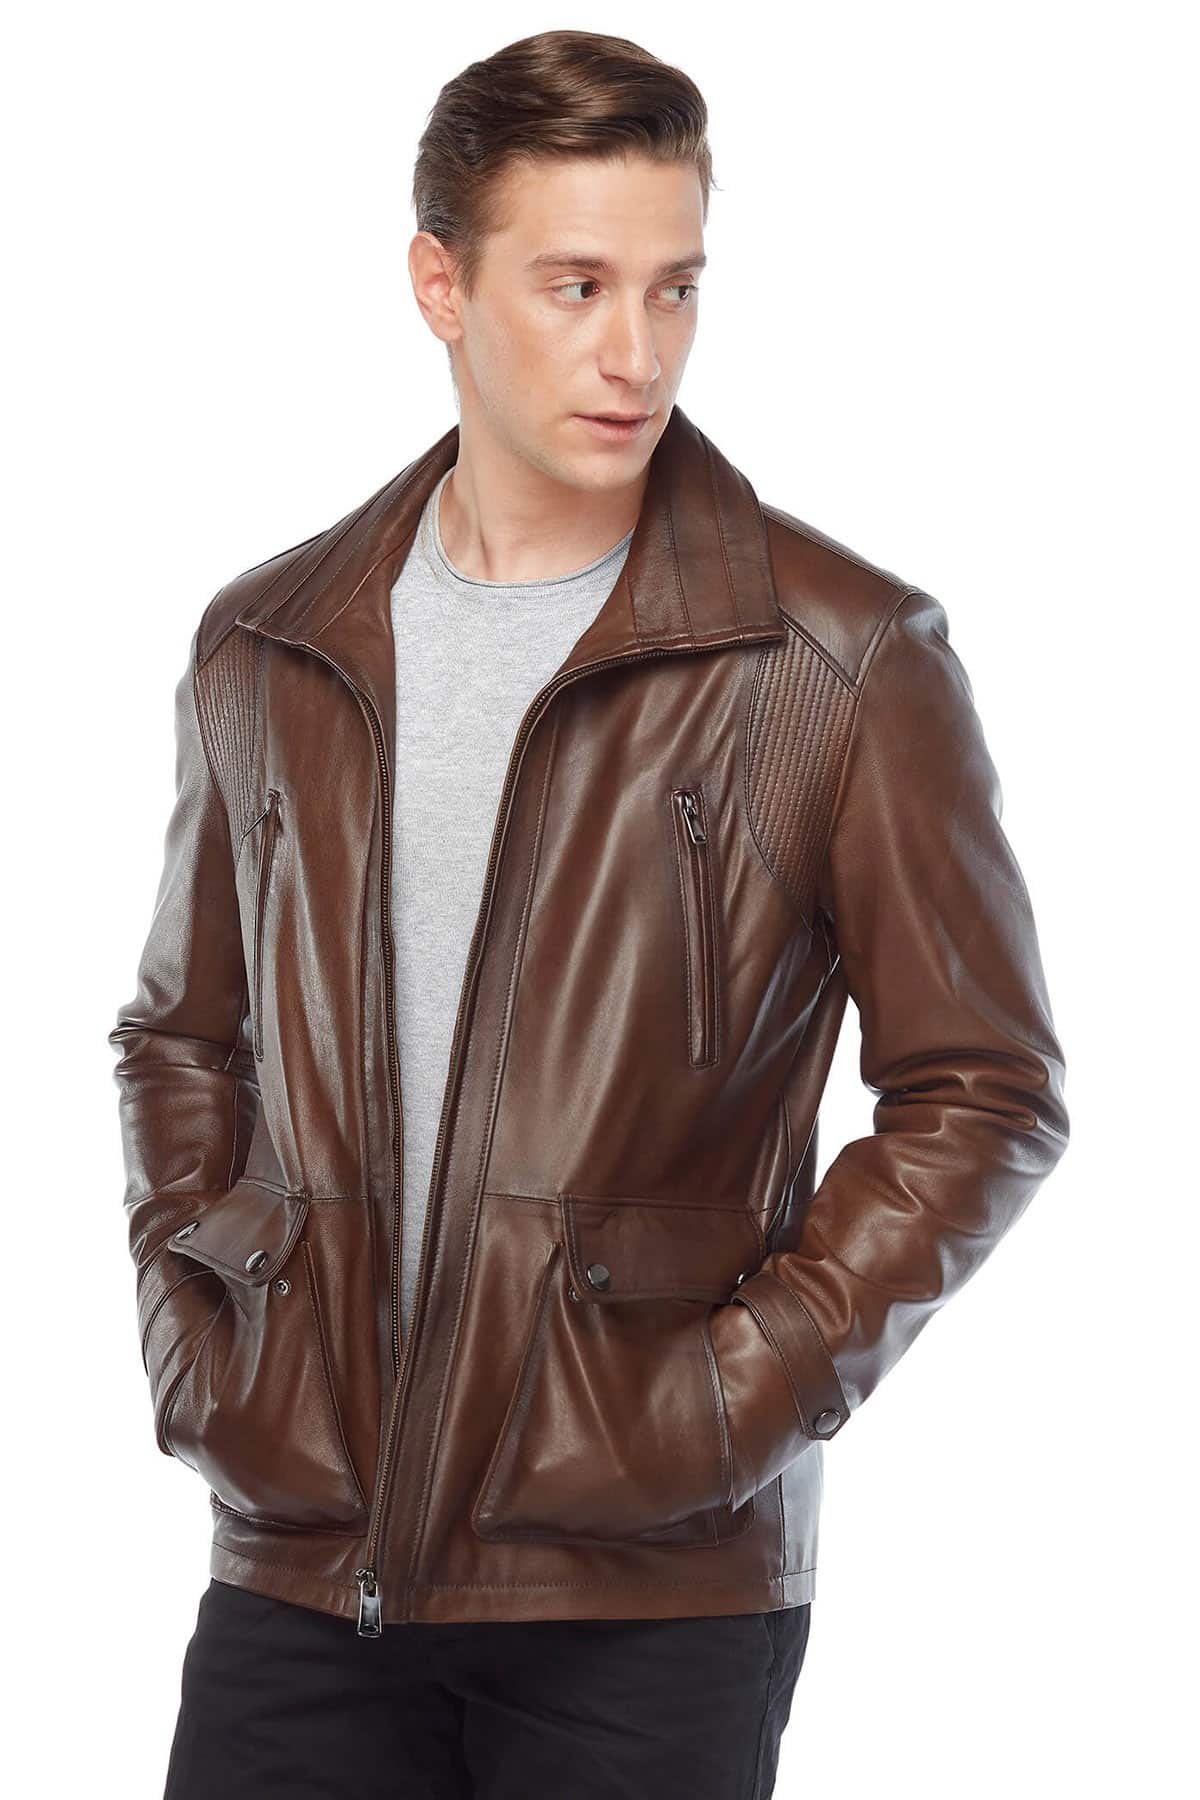 Benado Men's 100 % Real Brown Leather Jacket